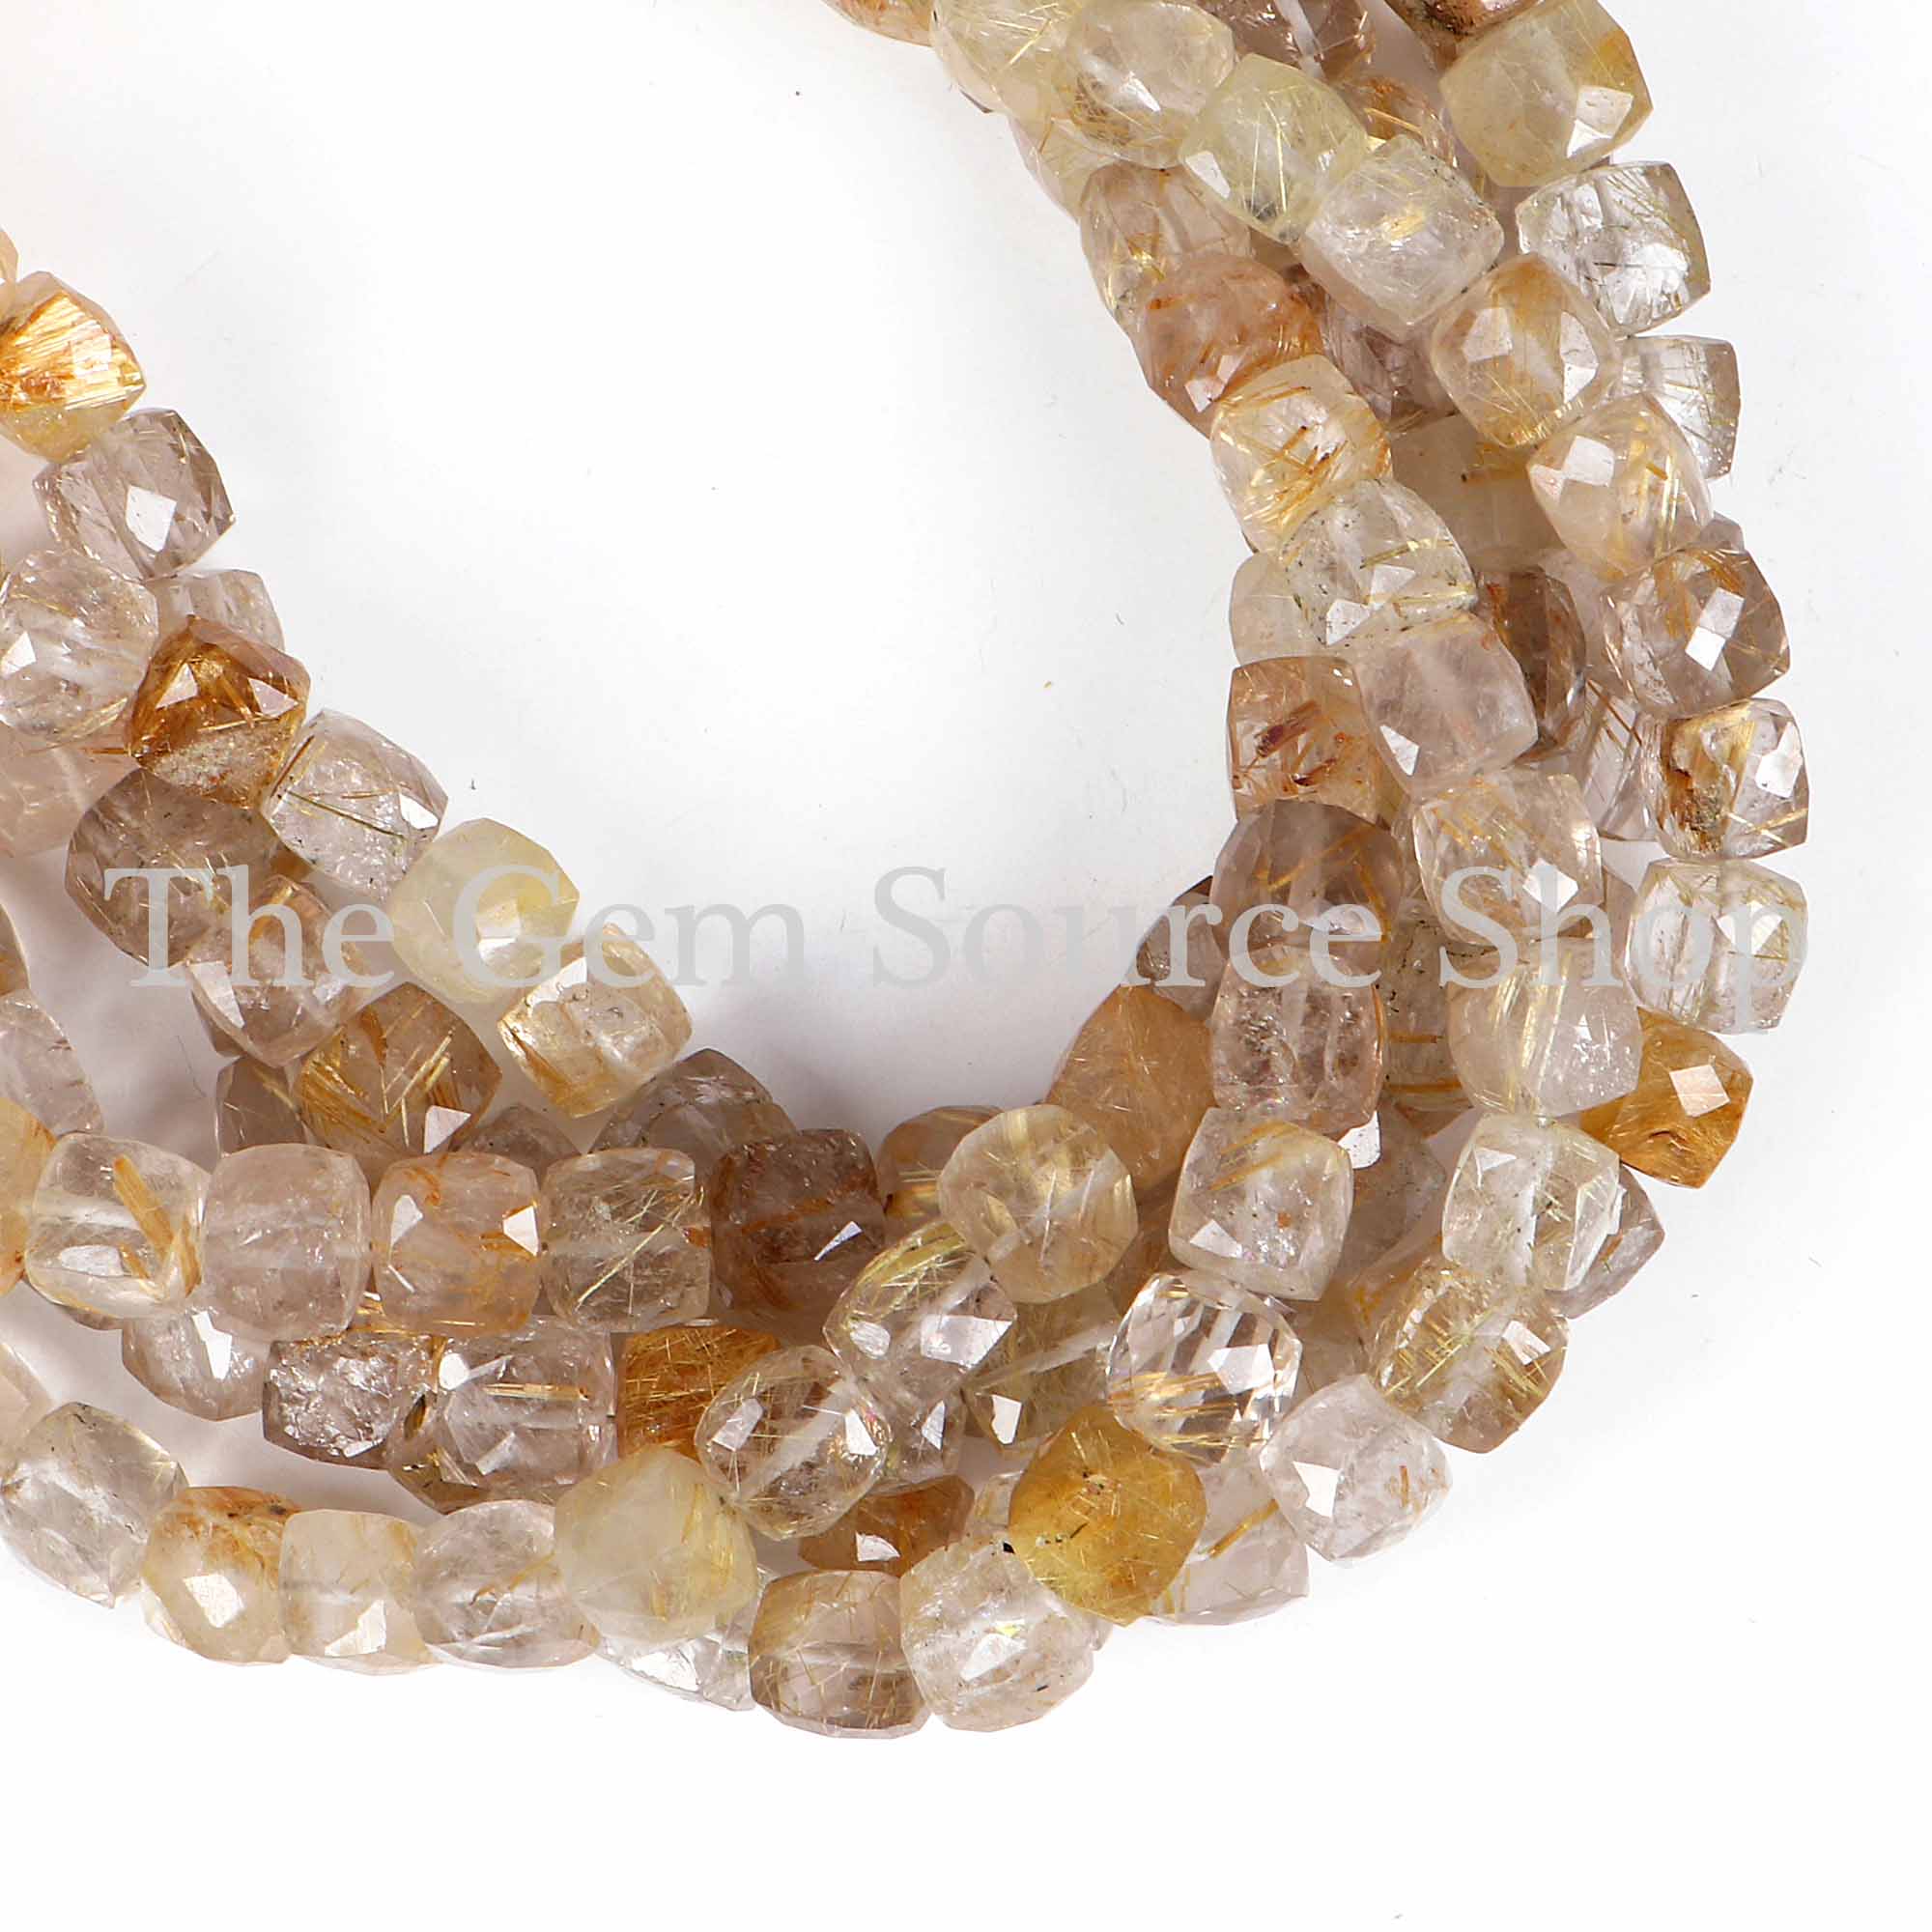 Golden Rutile Beads, Golden Rutile Faceted Beads, Golden Rutile Box Shape Beads, Wholesale Beads